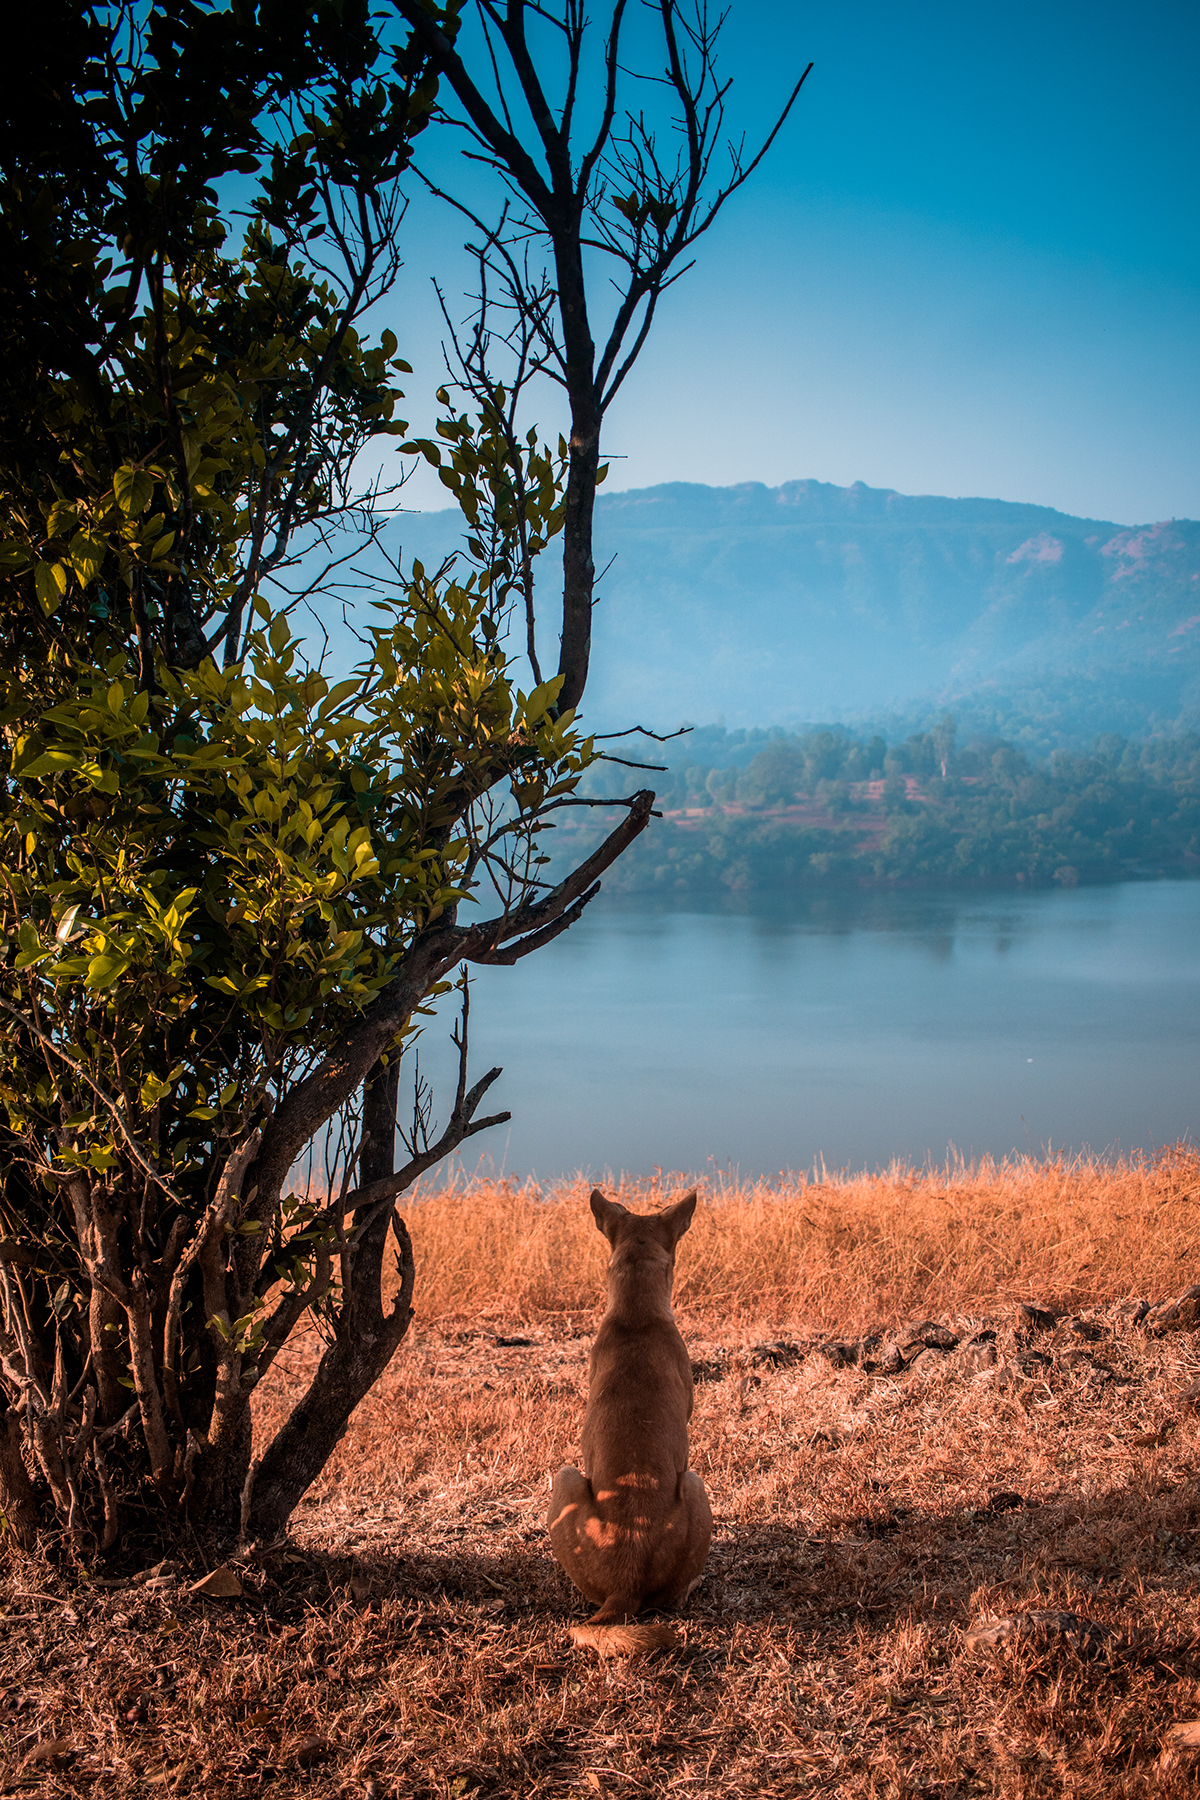 dog tapola landscape photography nature photography mountains lakes india tour MUMBAI dog portrait